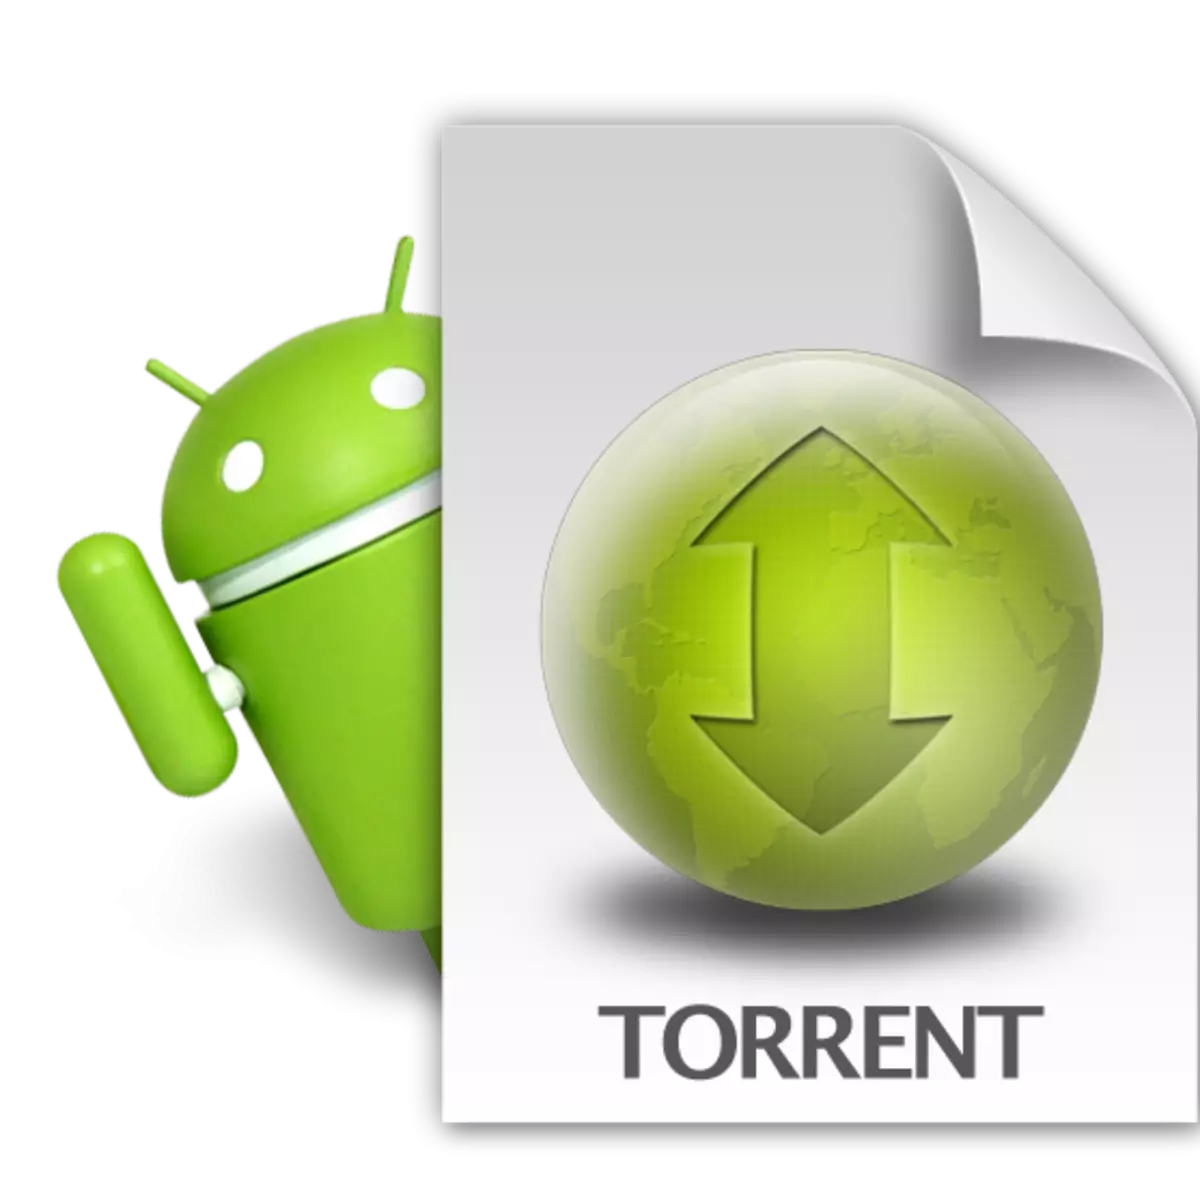 Ampidino ny mpanjifa torrent ho an'ny Android